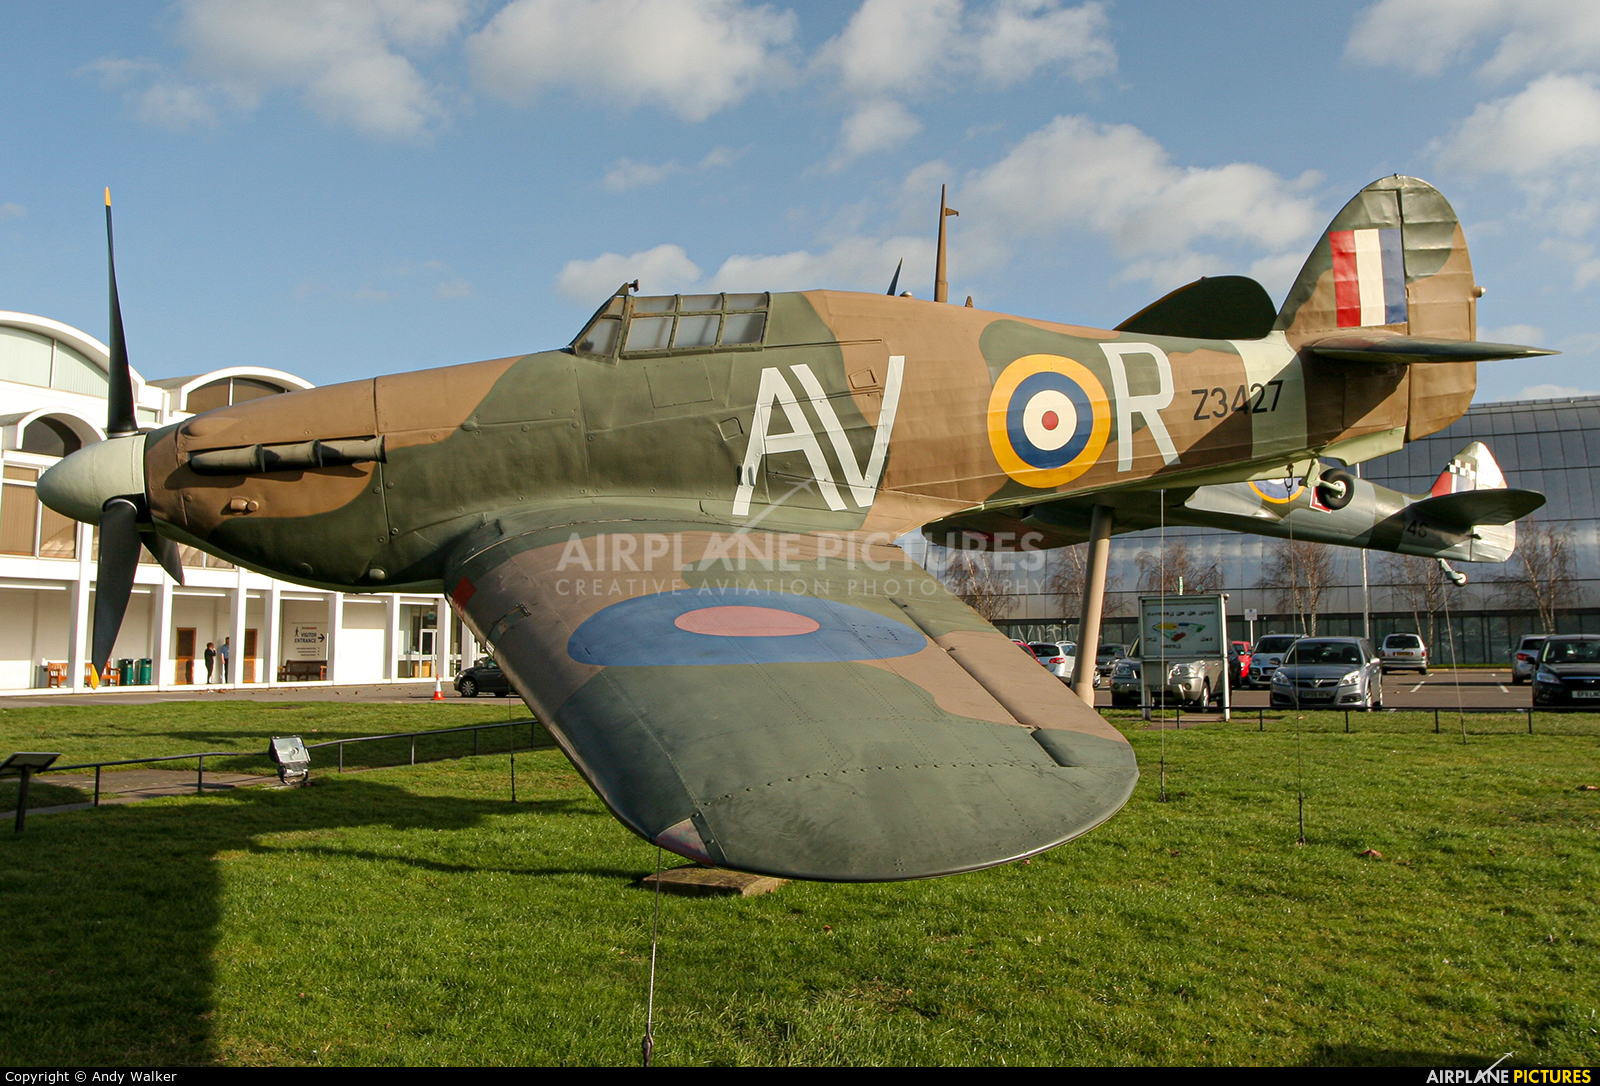 Royal Air Force Z3427 aircraft at Hendon - RAF Museum